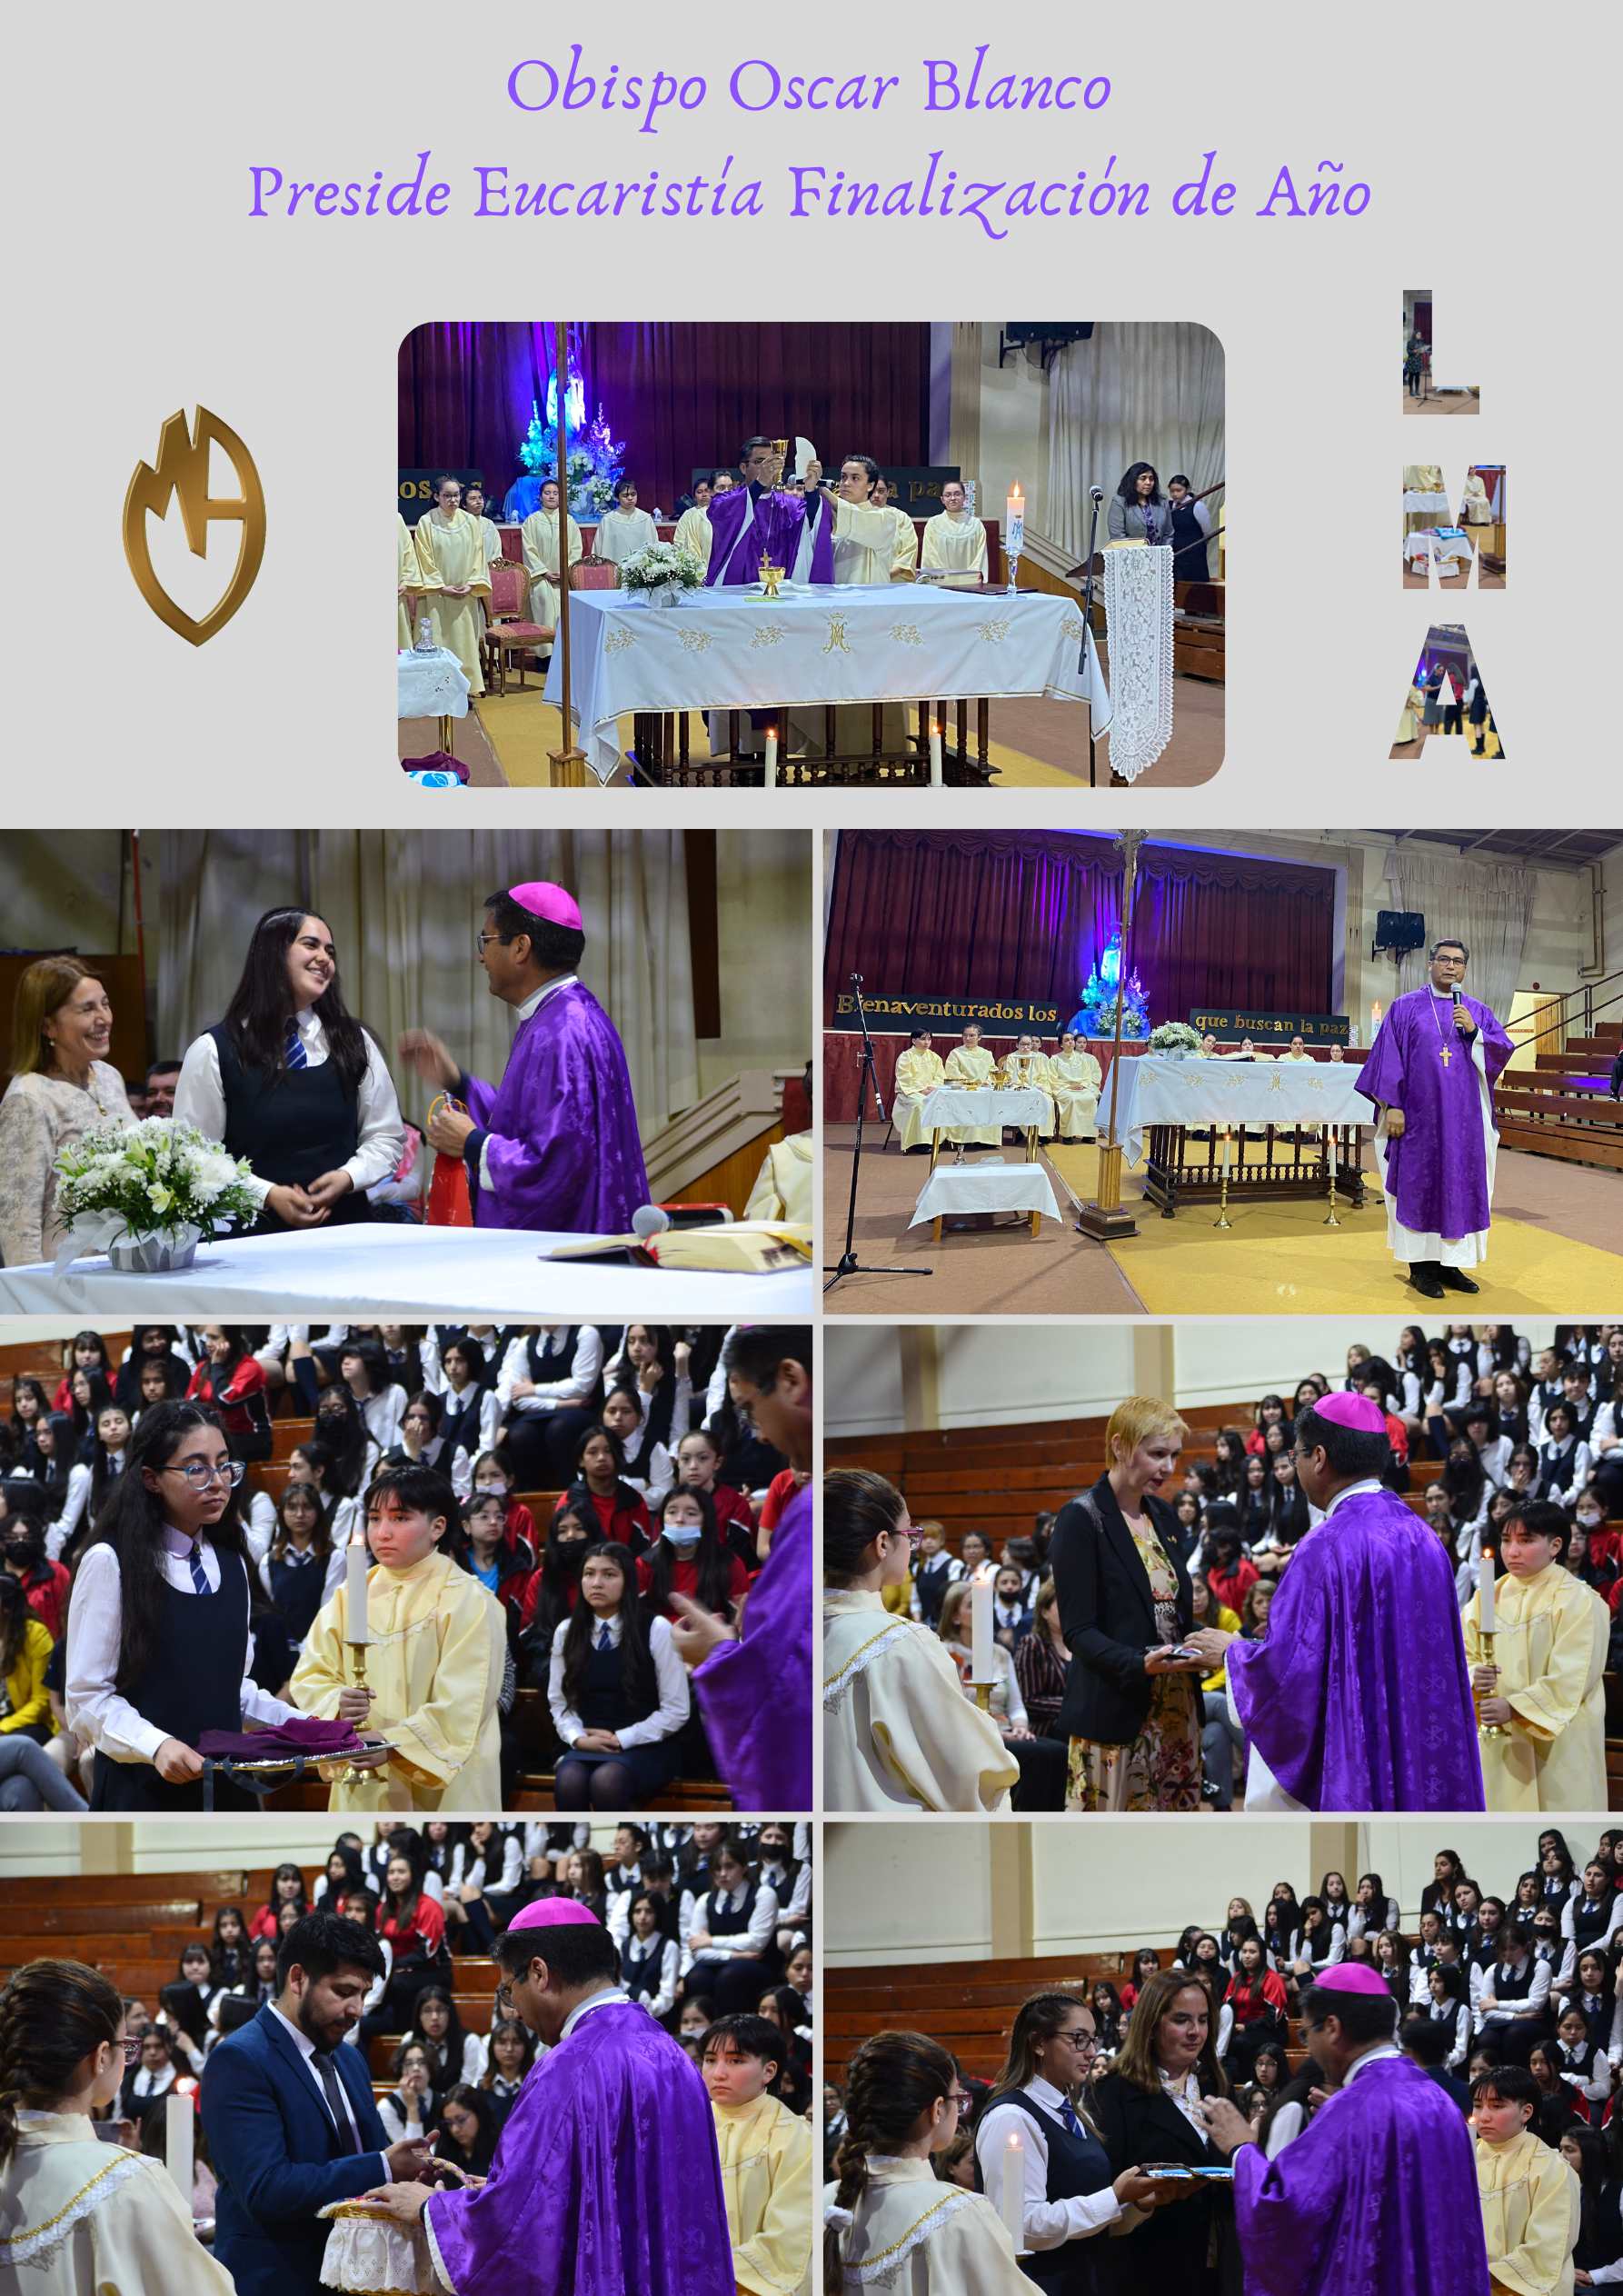 Obispo_Oscar_Blanco_Preside_Eucaristía_Finalización_de_Año.jpg